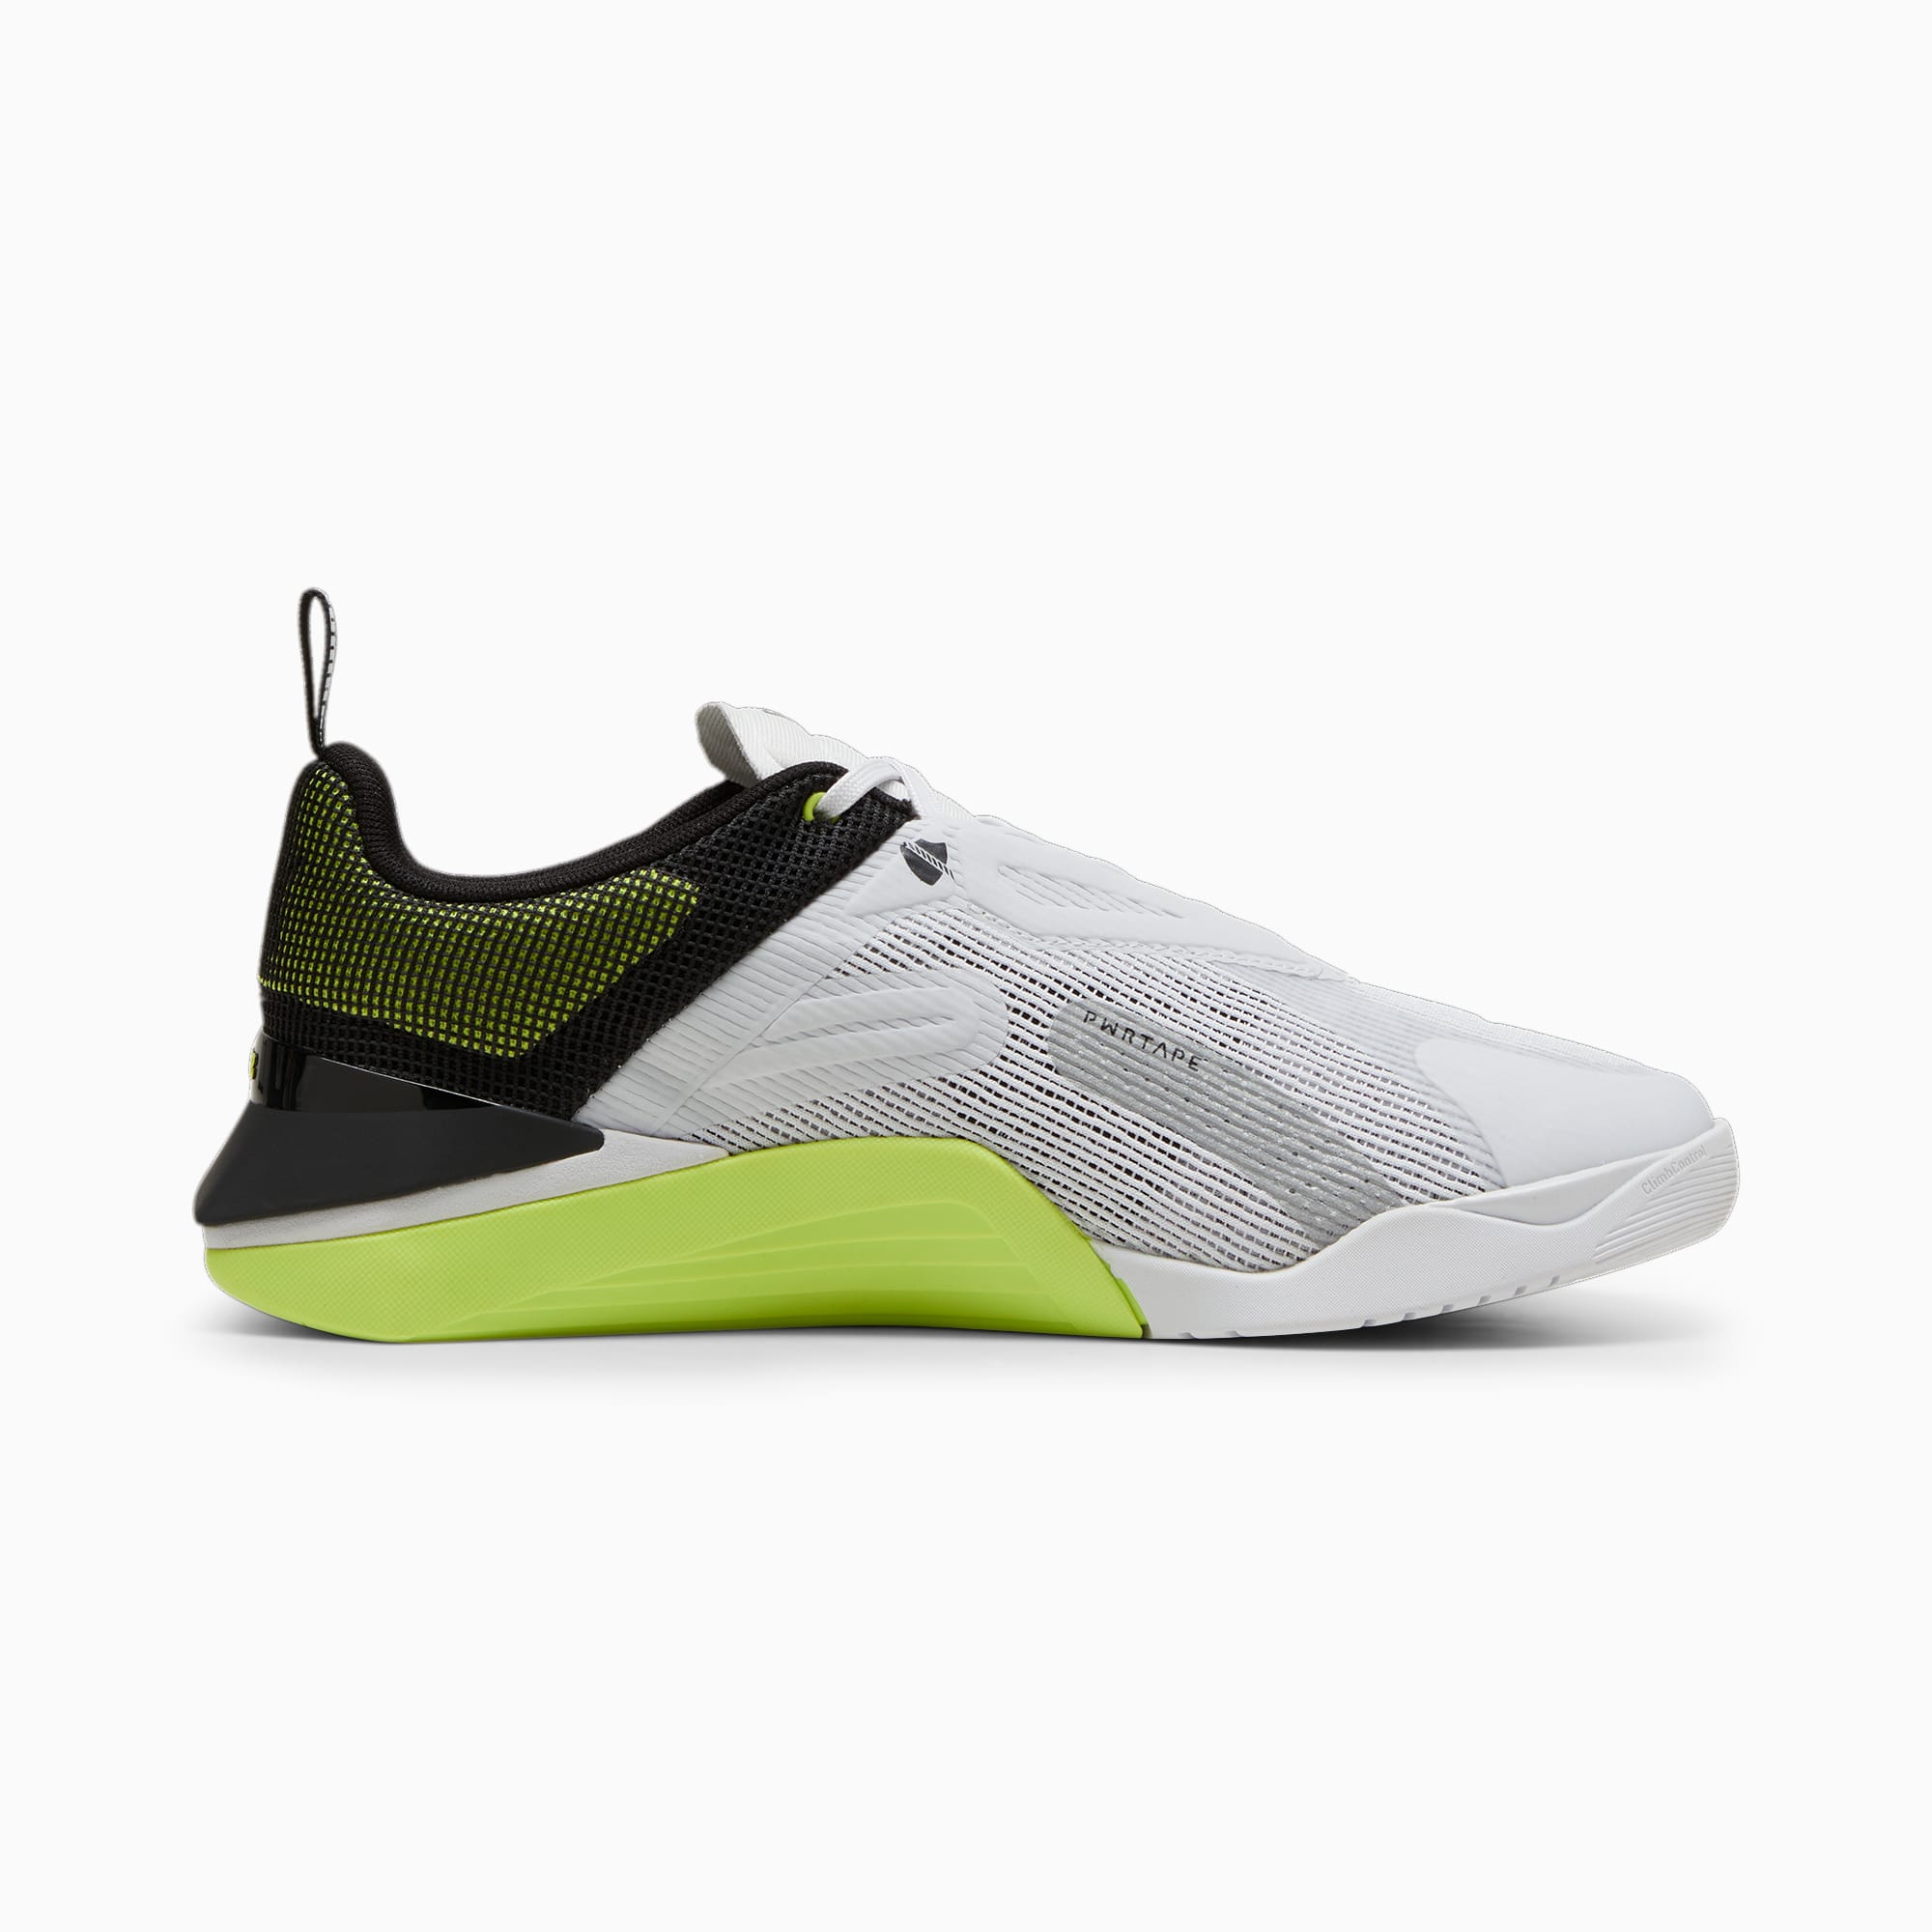 PUMA Fuse 3.0 Sportschoenen Voor Heren, Groen/Zwart/Zilver